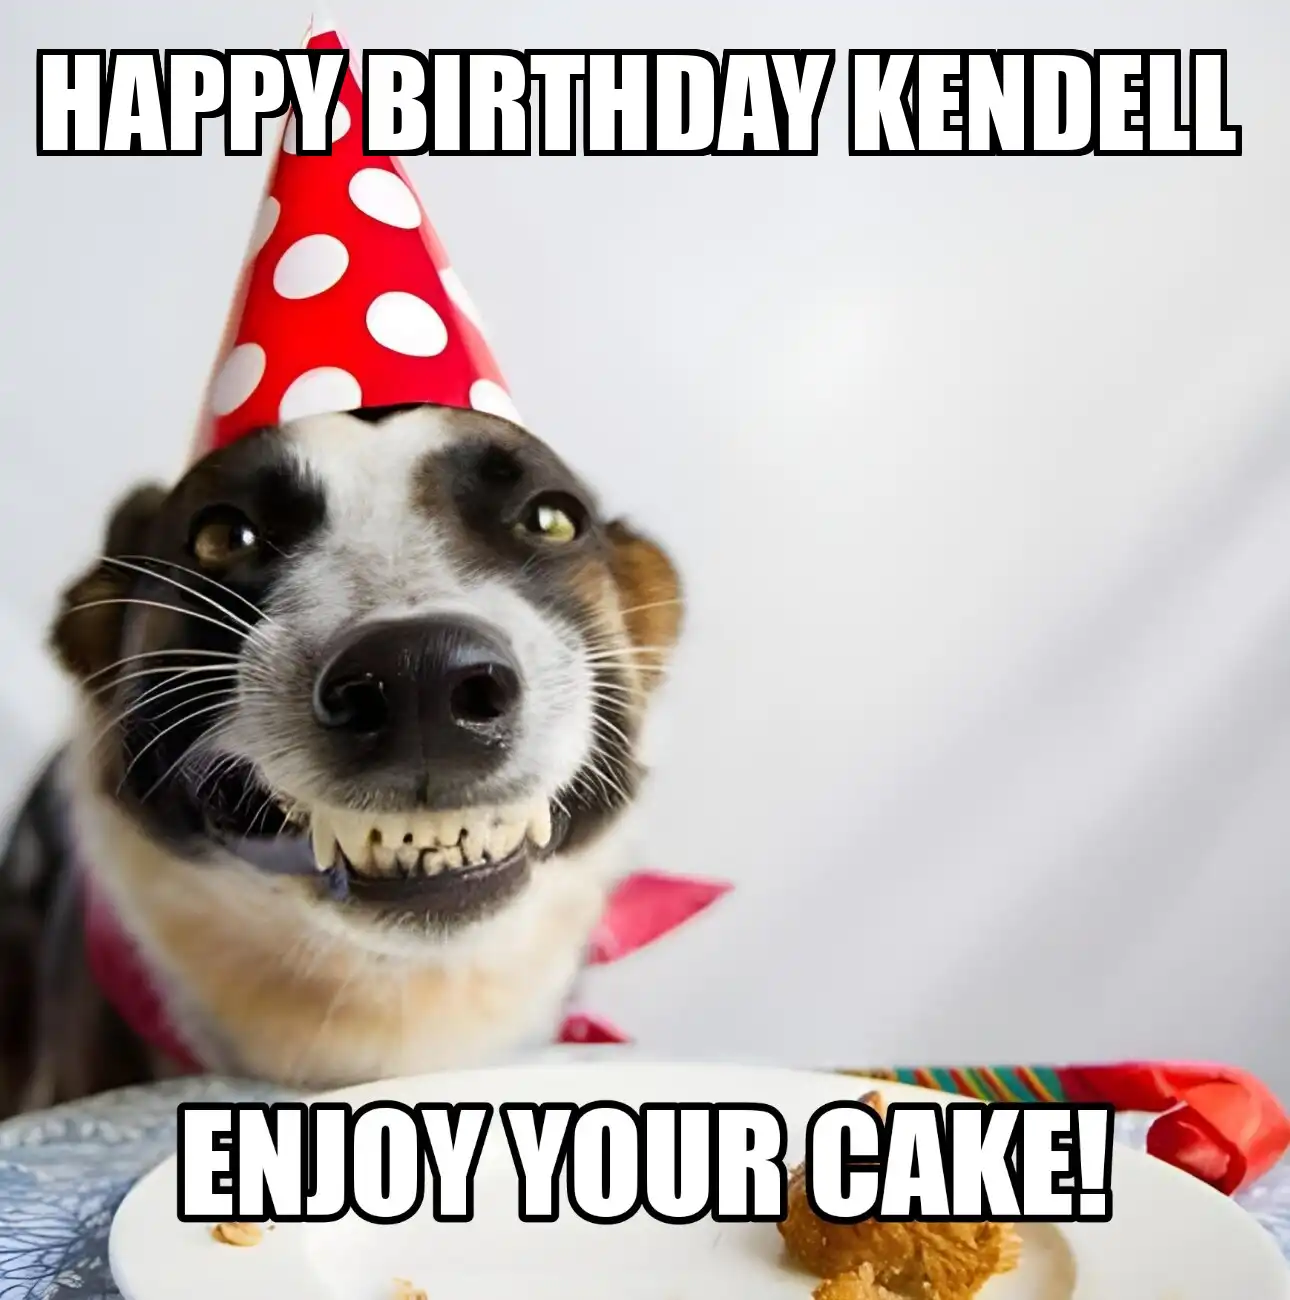 Happy Birthday Kendell Enjoy Your Cake Dog Meme